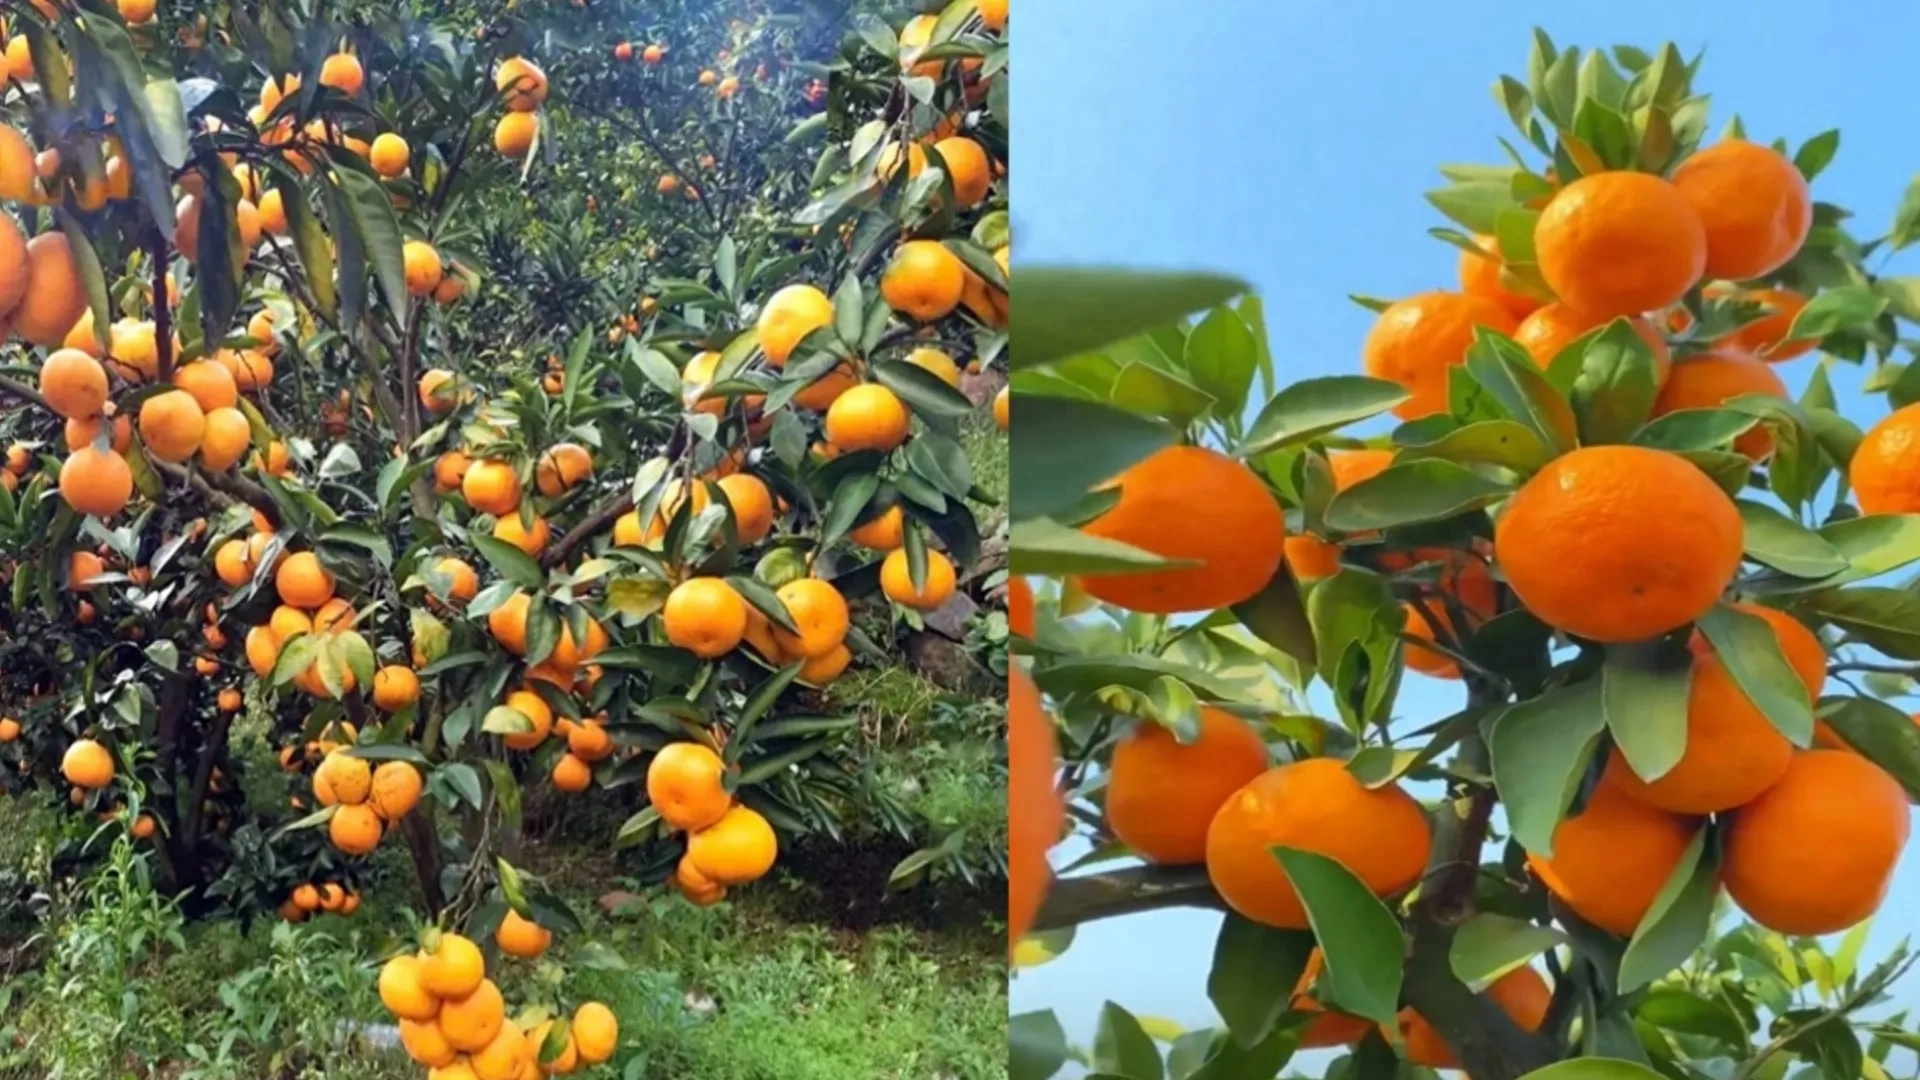 桔子、柚子、橙子和柑在外观、口感、营养成分上有显著的区别。外观桔子外形为扁圆形，果皮颜色为橙红、朱红或橙黄，果皮软且宽松易剥离。柚子外形为圆球形或梨形，果皮稍厚且